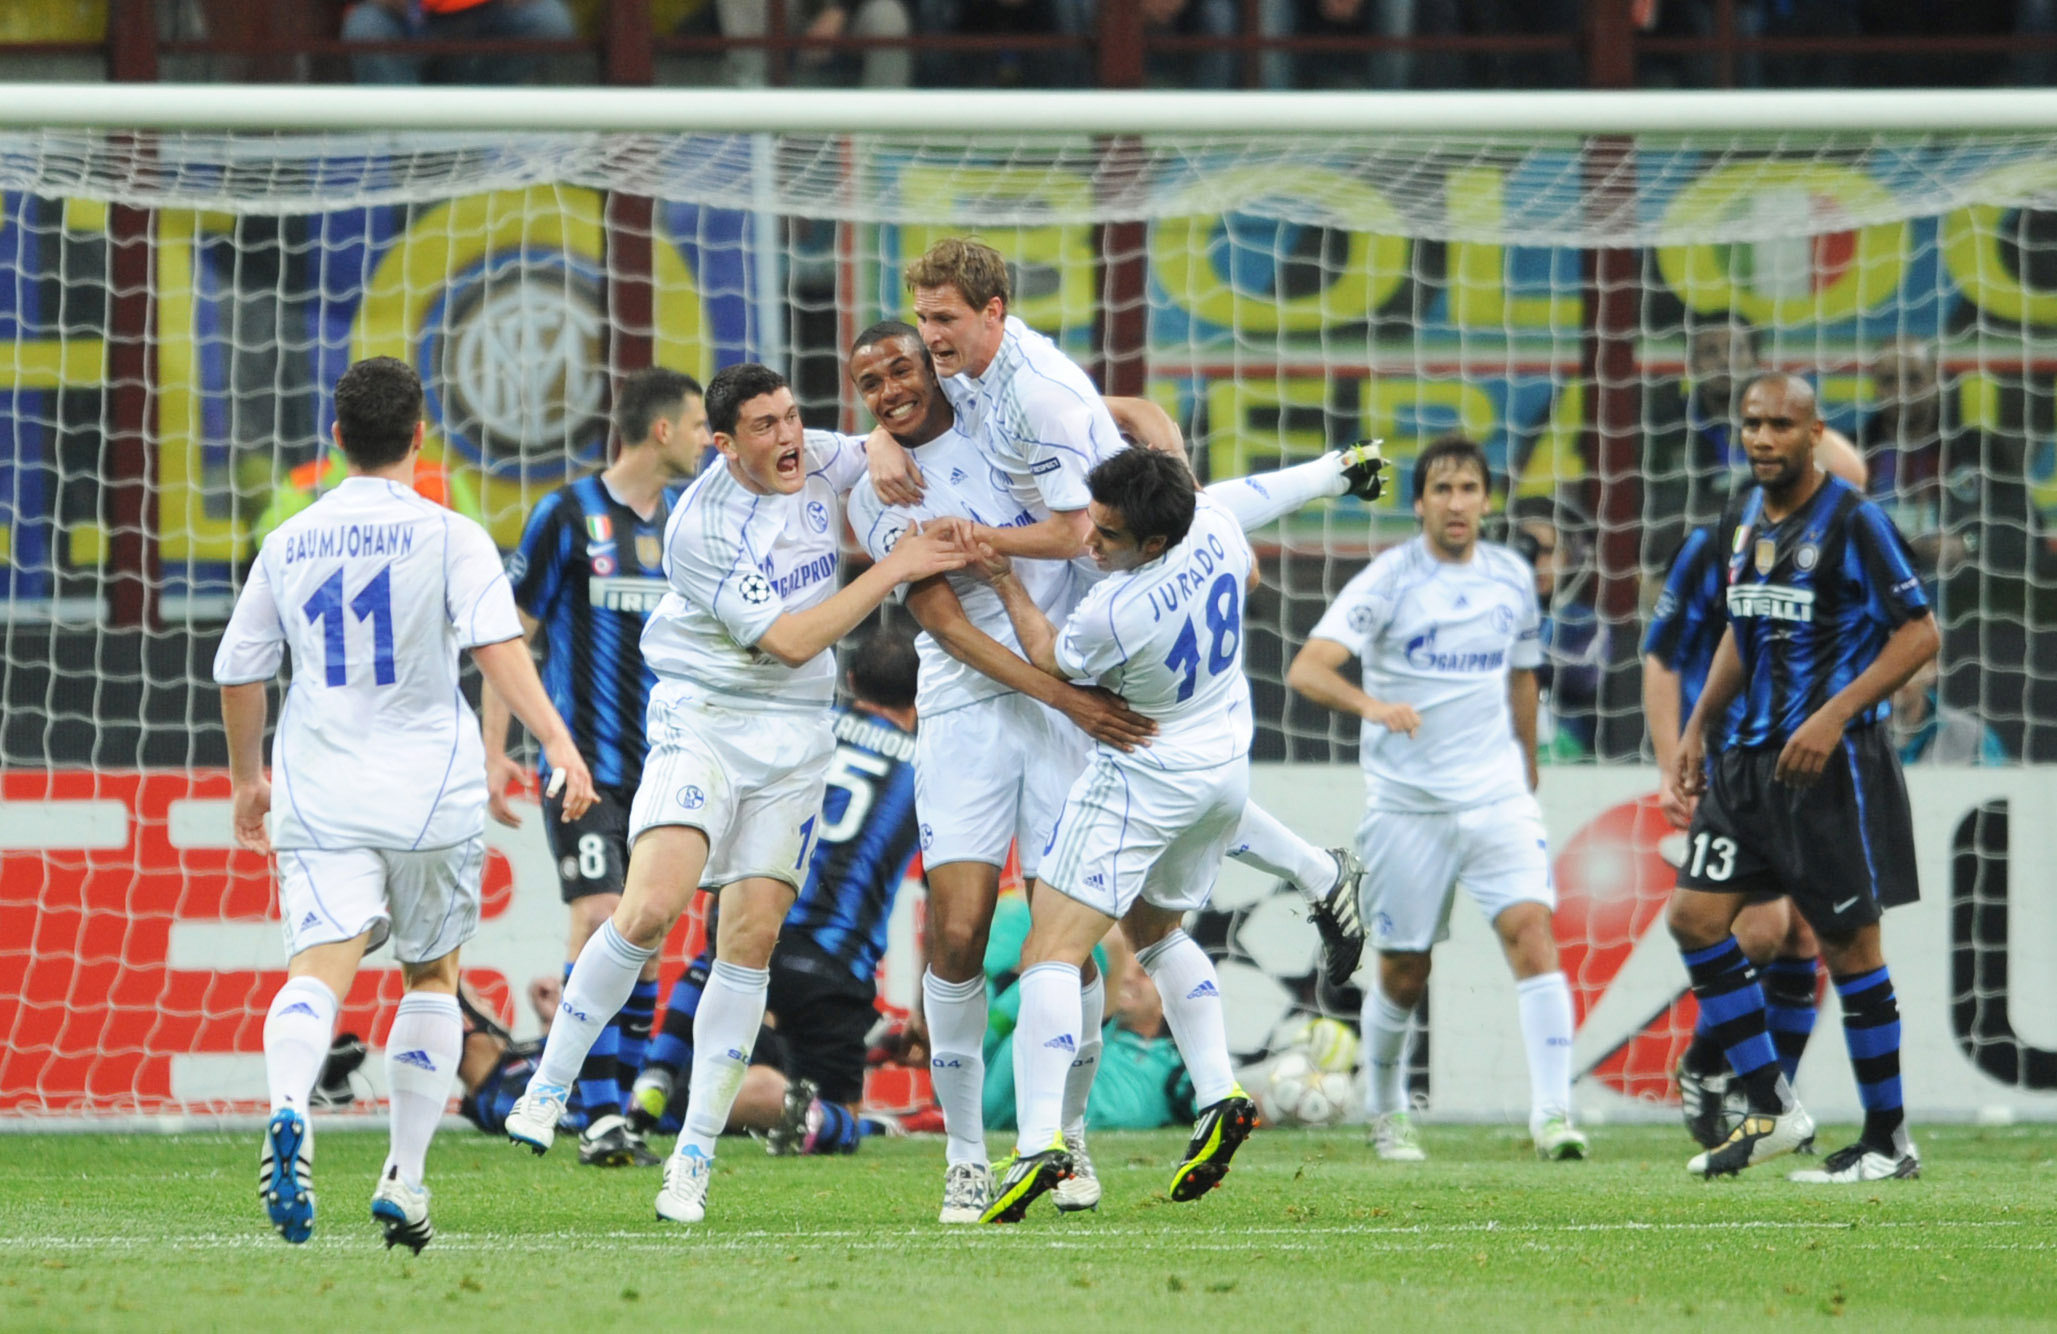 Schalke utklassade de regerande mästarna med 5-2 på San Siro.